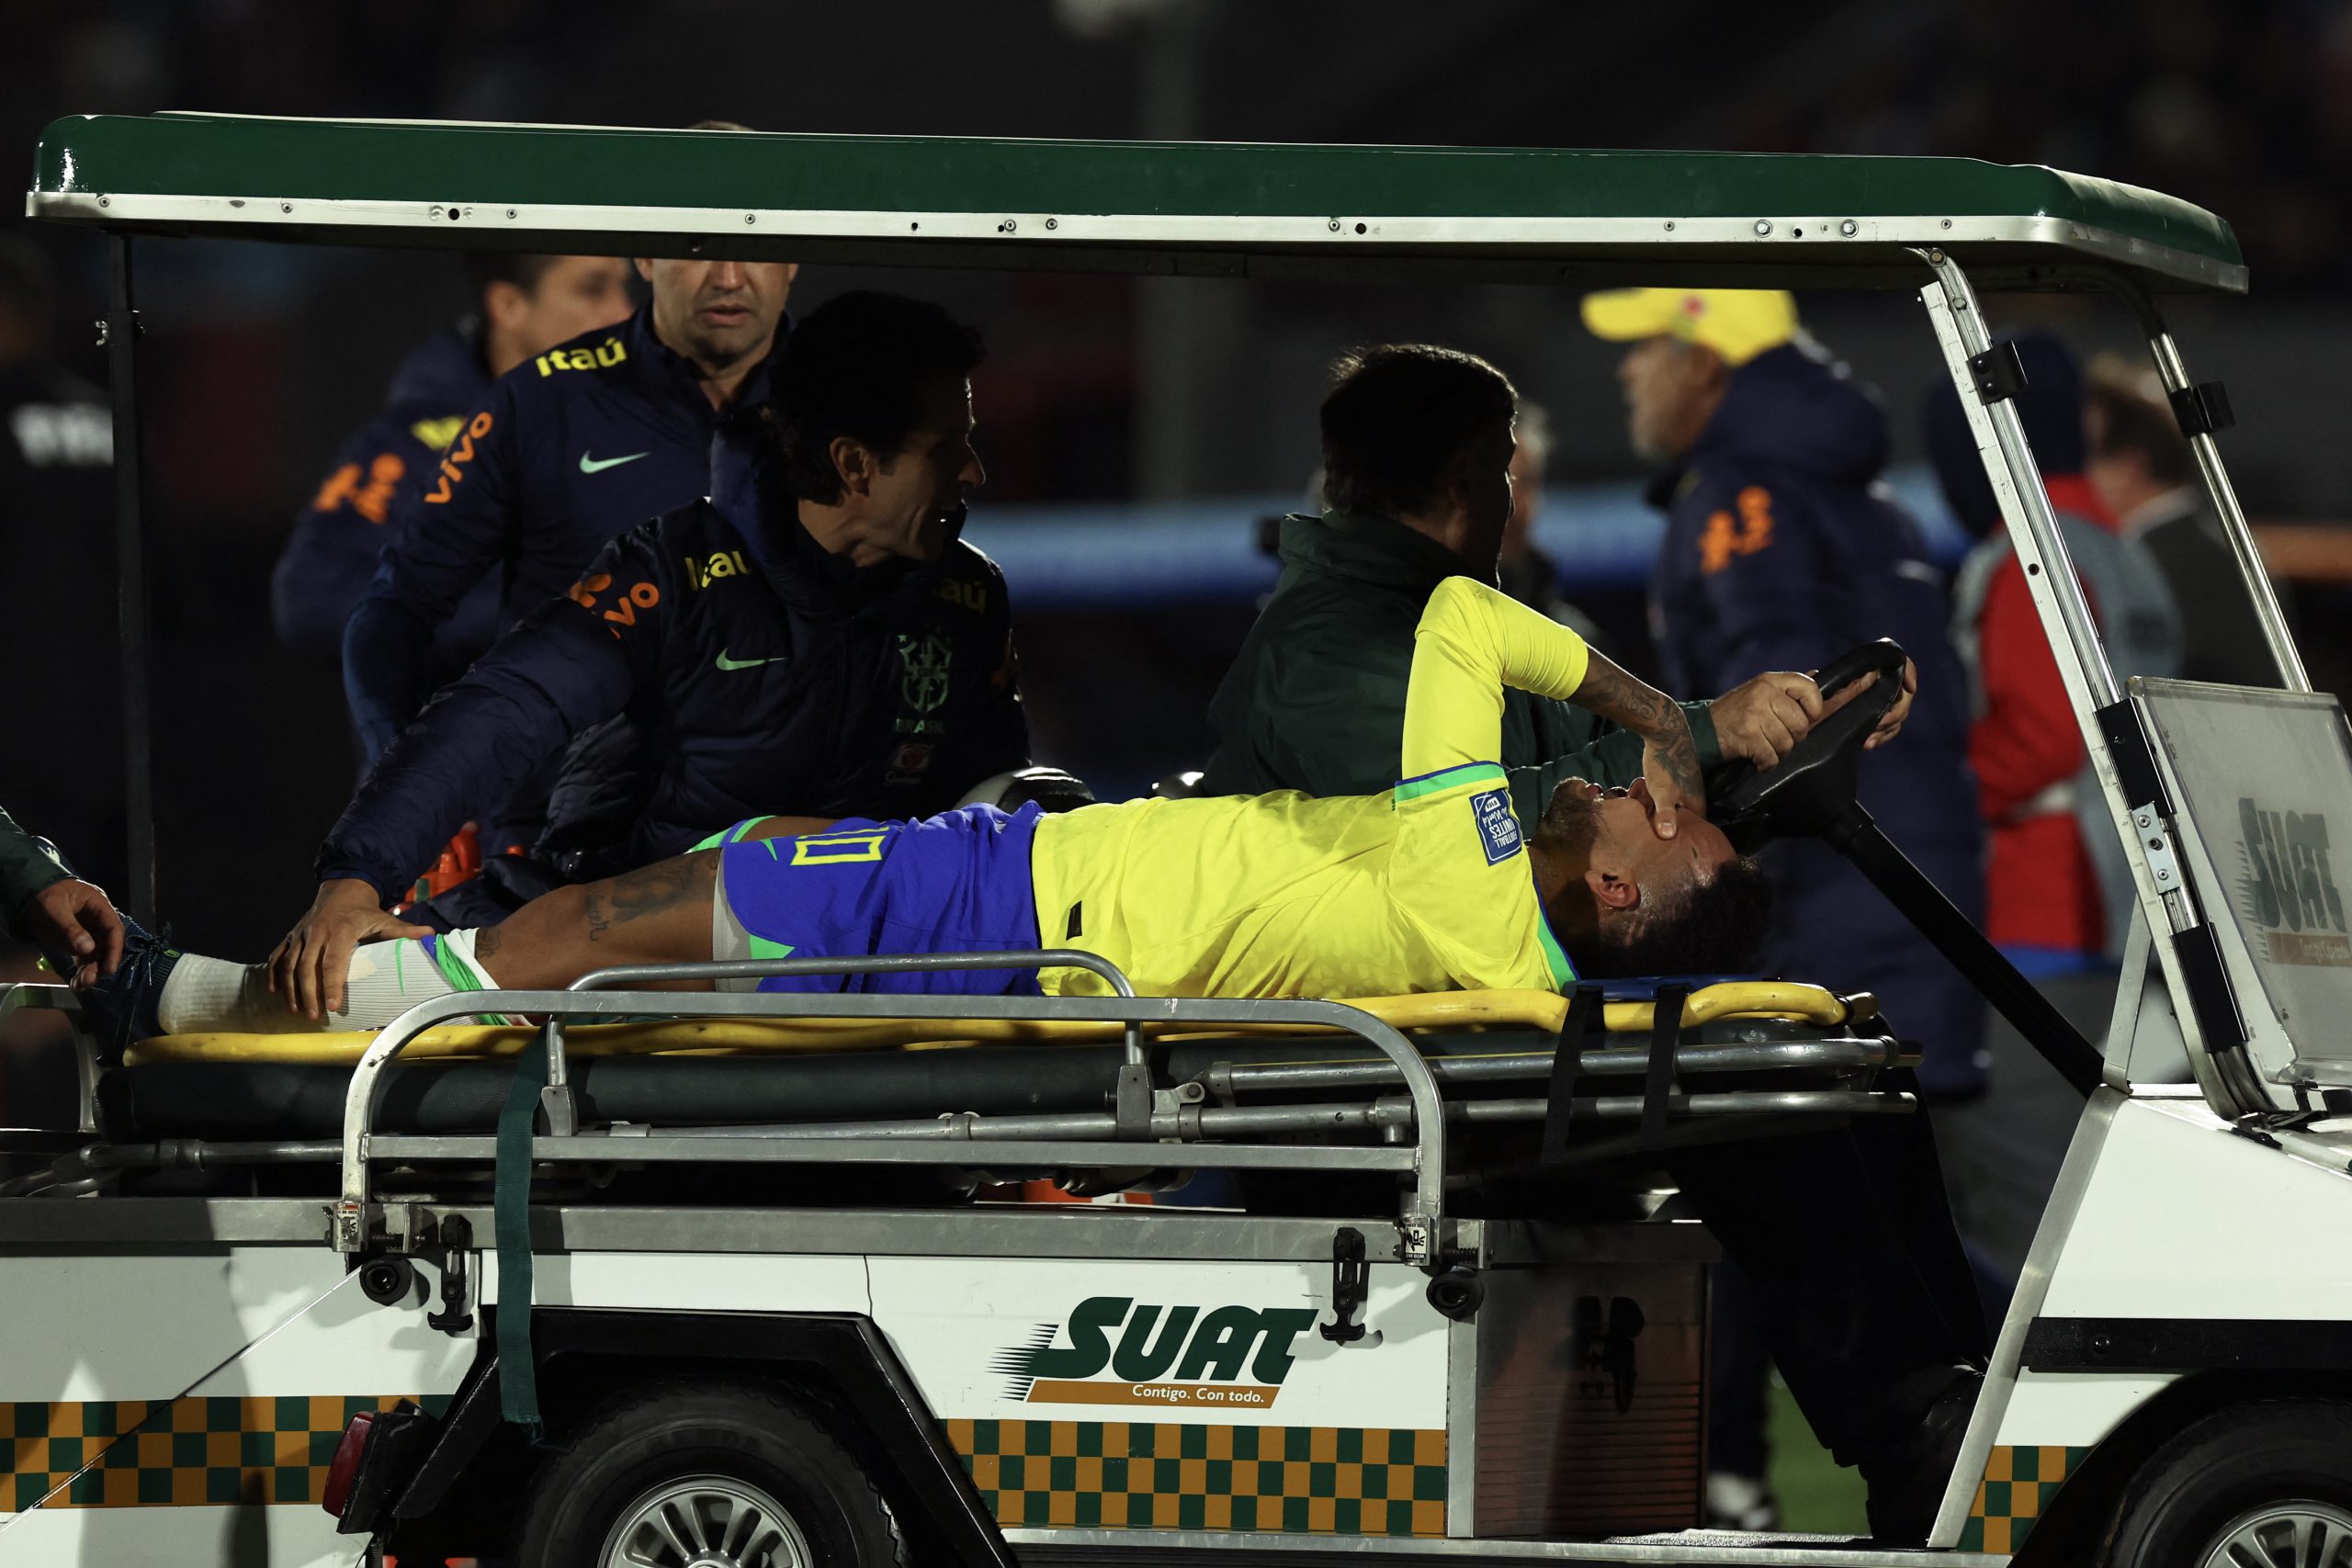 Na pior apresentação com Diniz, Brasil perde para o Uruguai em jogo marcado  por lesão de Neymar